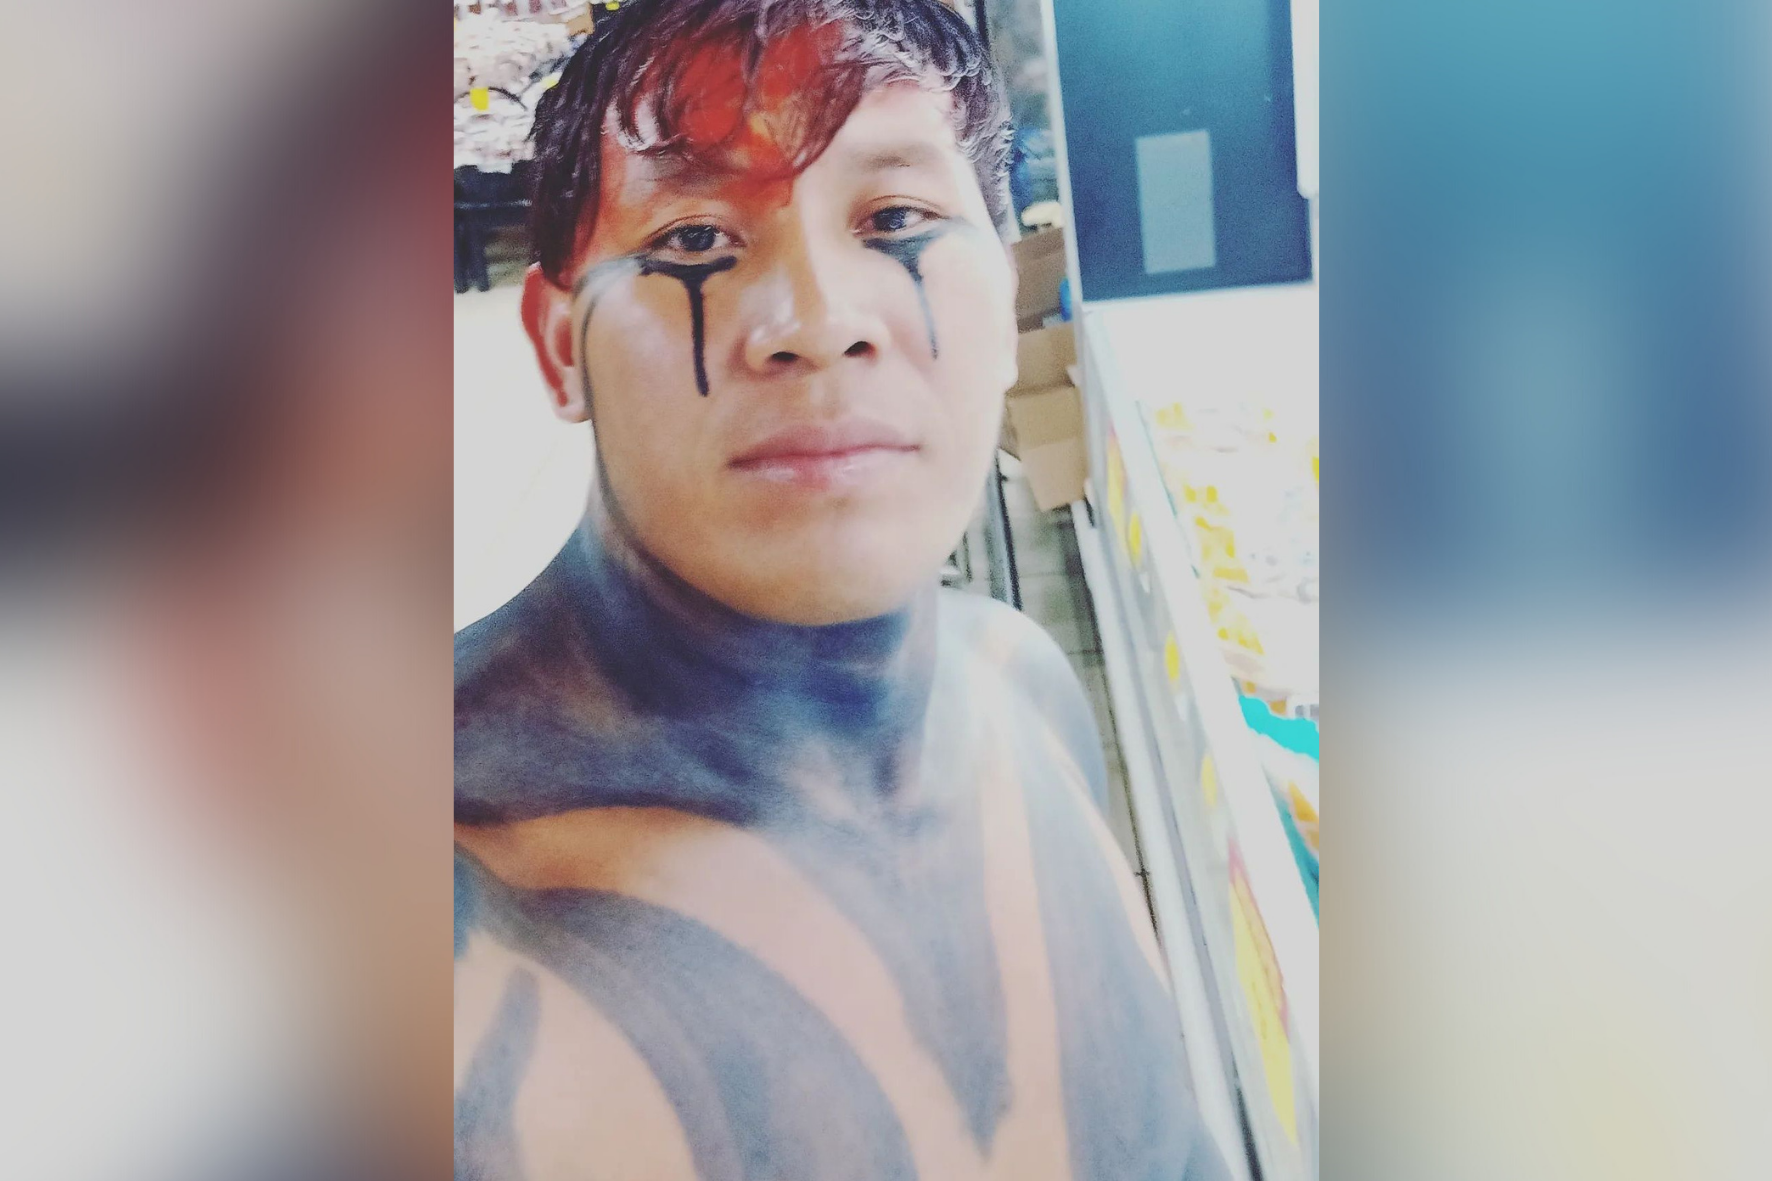 Com pintura corporal, indígena é barrado em supermercado: “meu traje de gala”